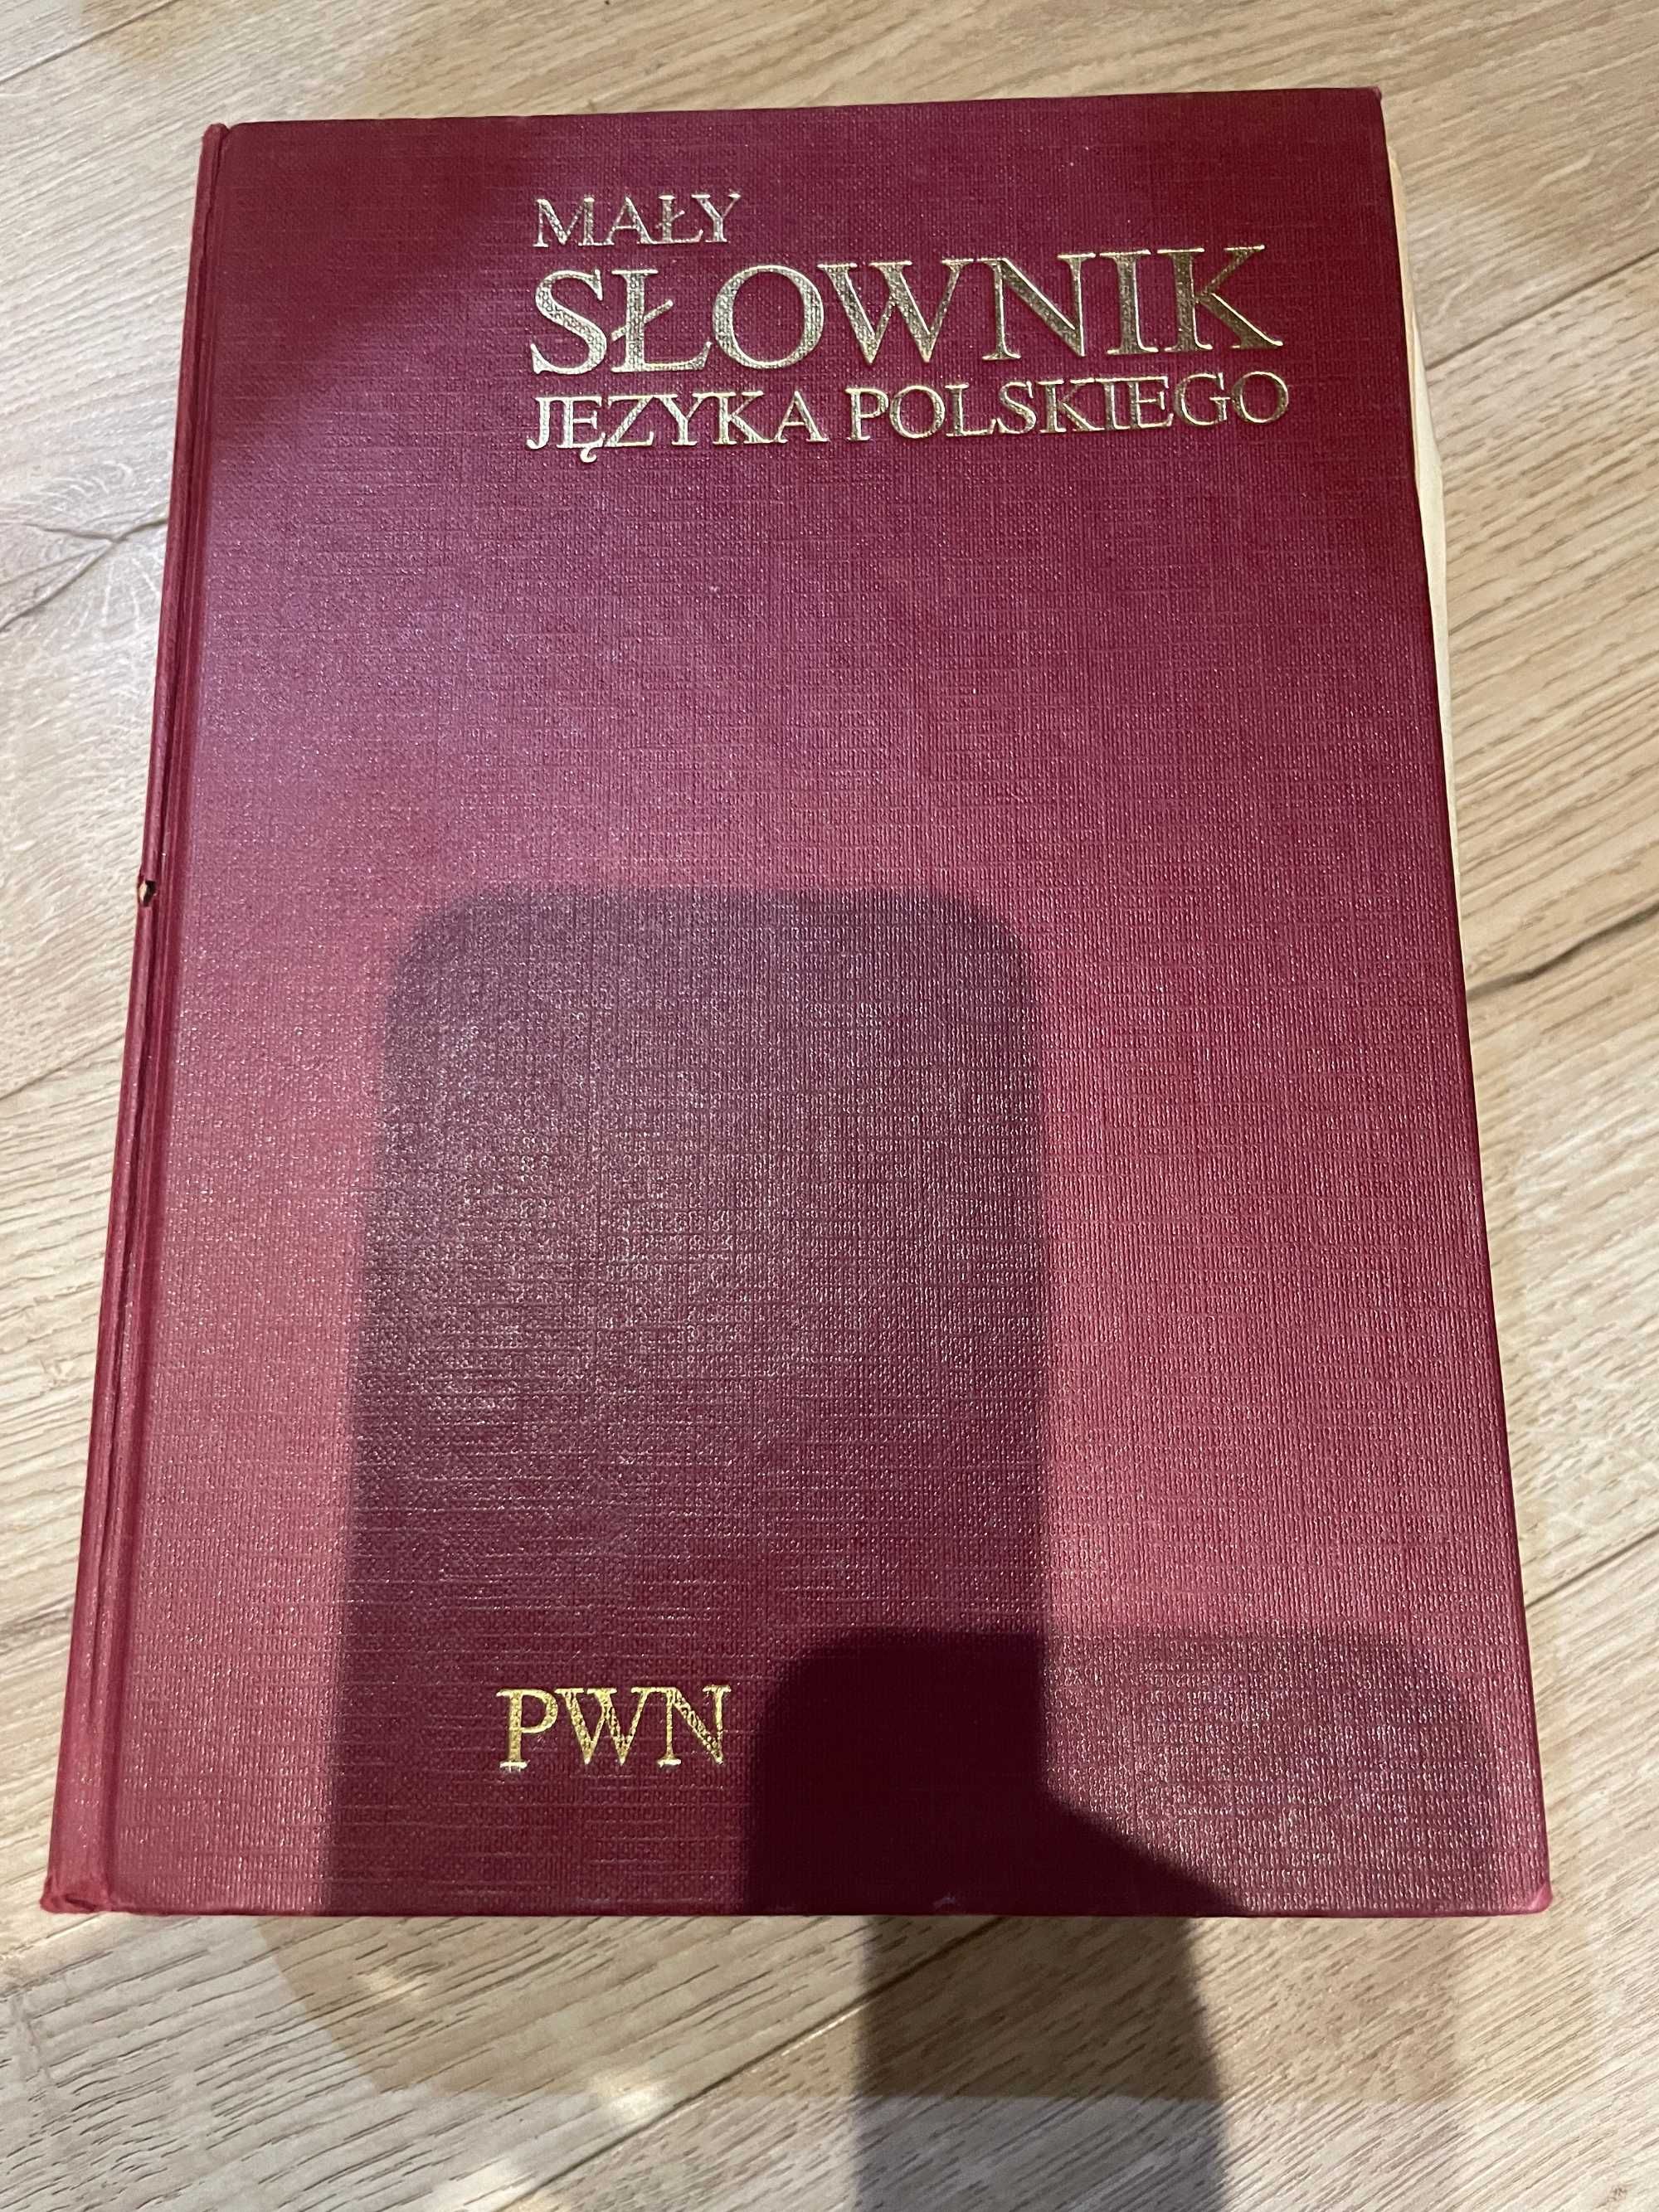 Mały Słownik języka polskiego PWN